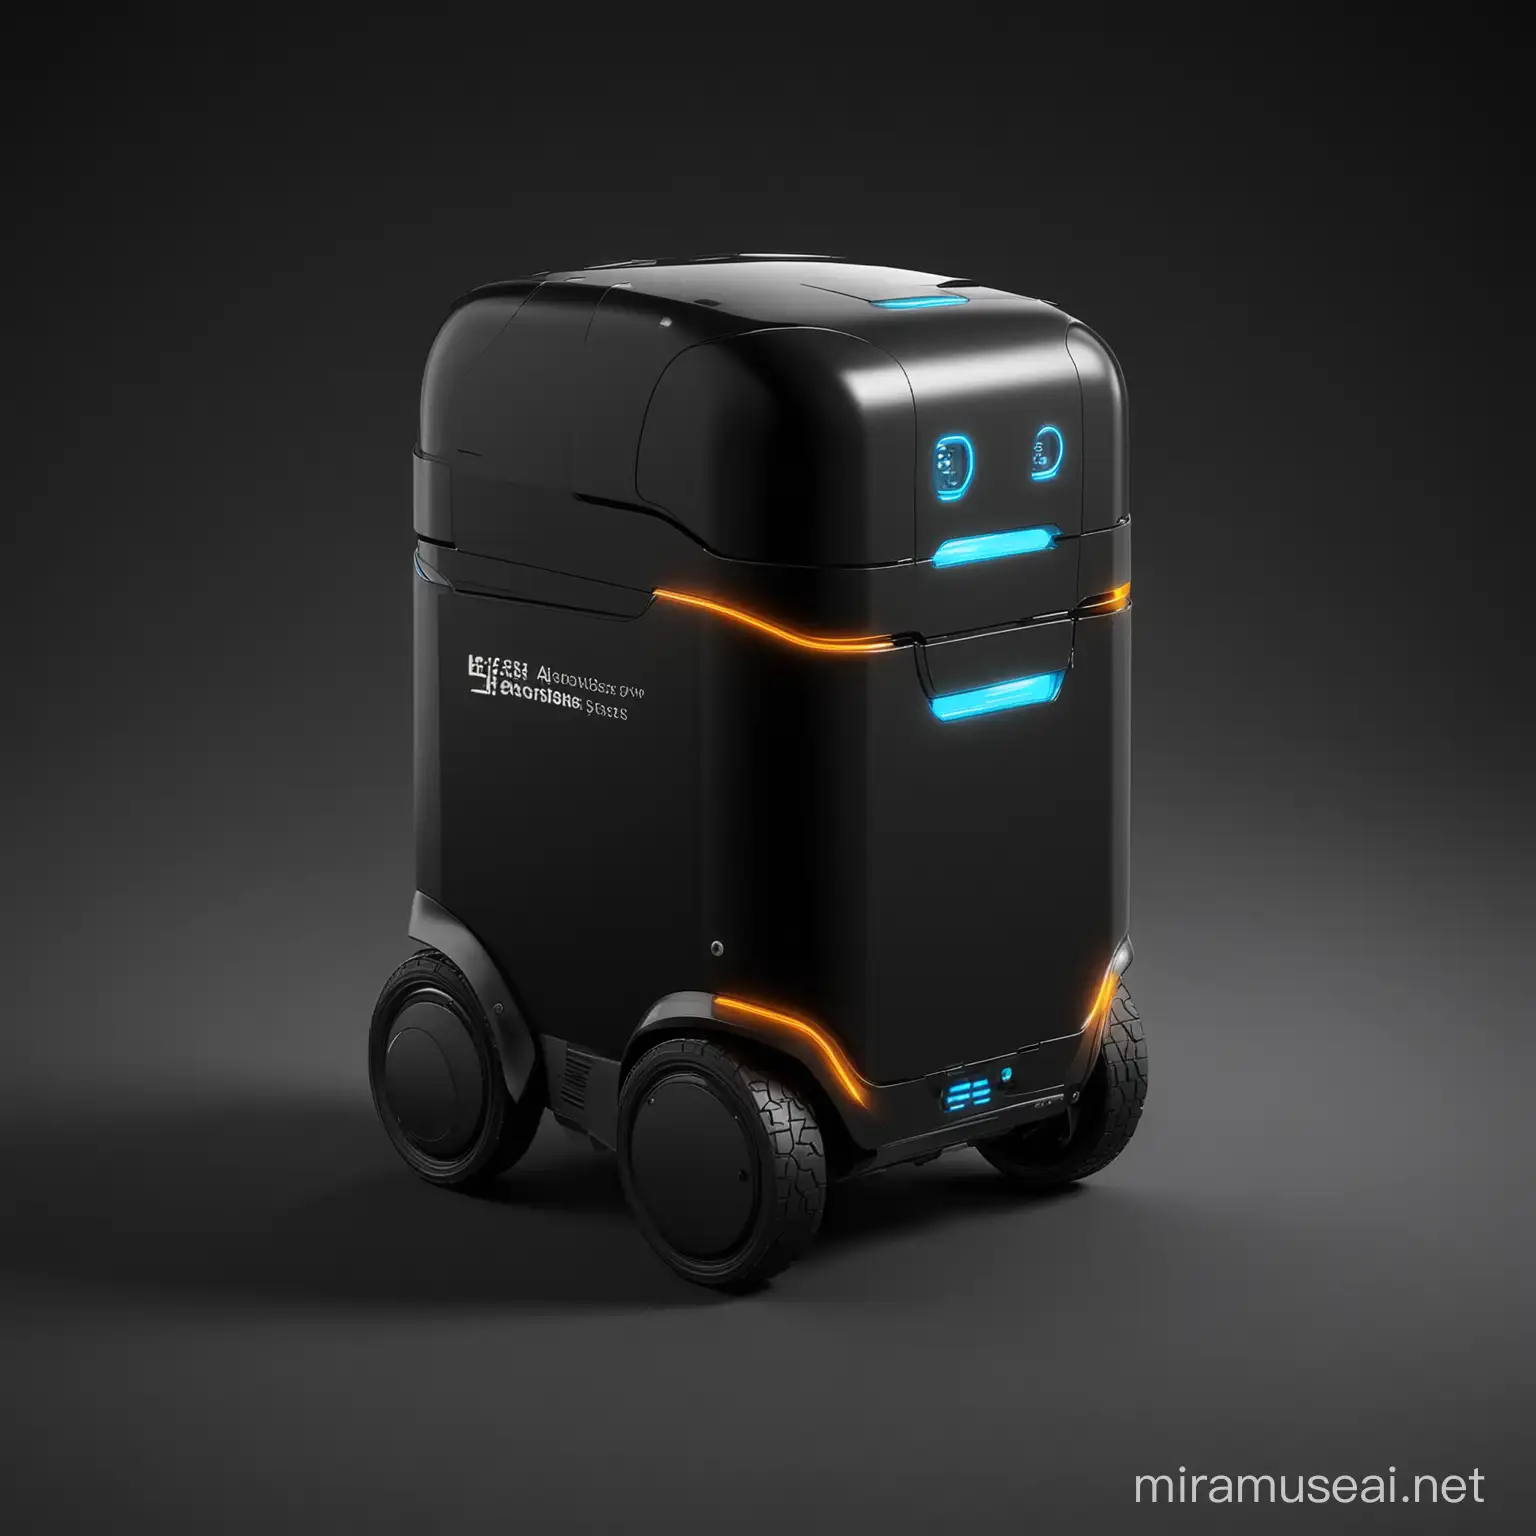 Autonomous Parcel Delivery Robot on Black Background